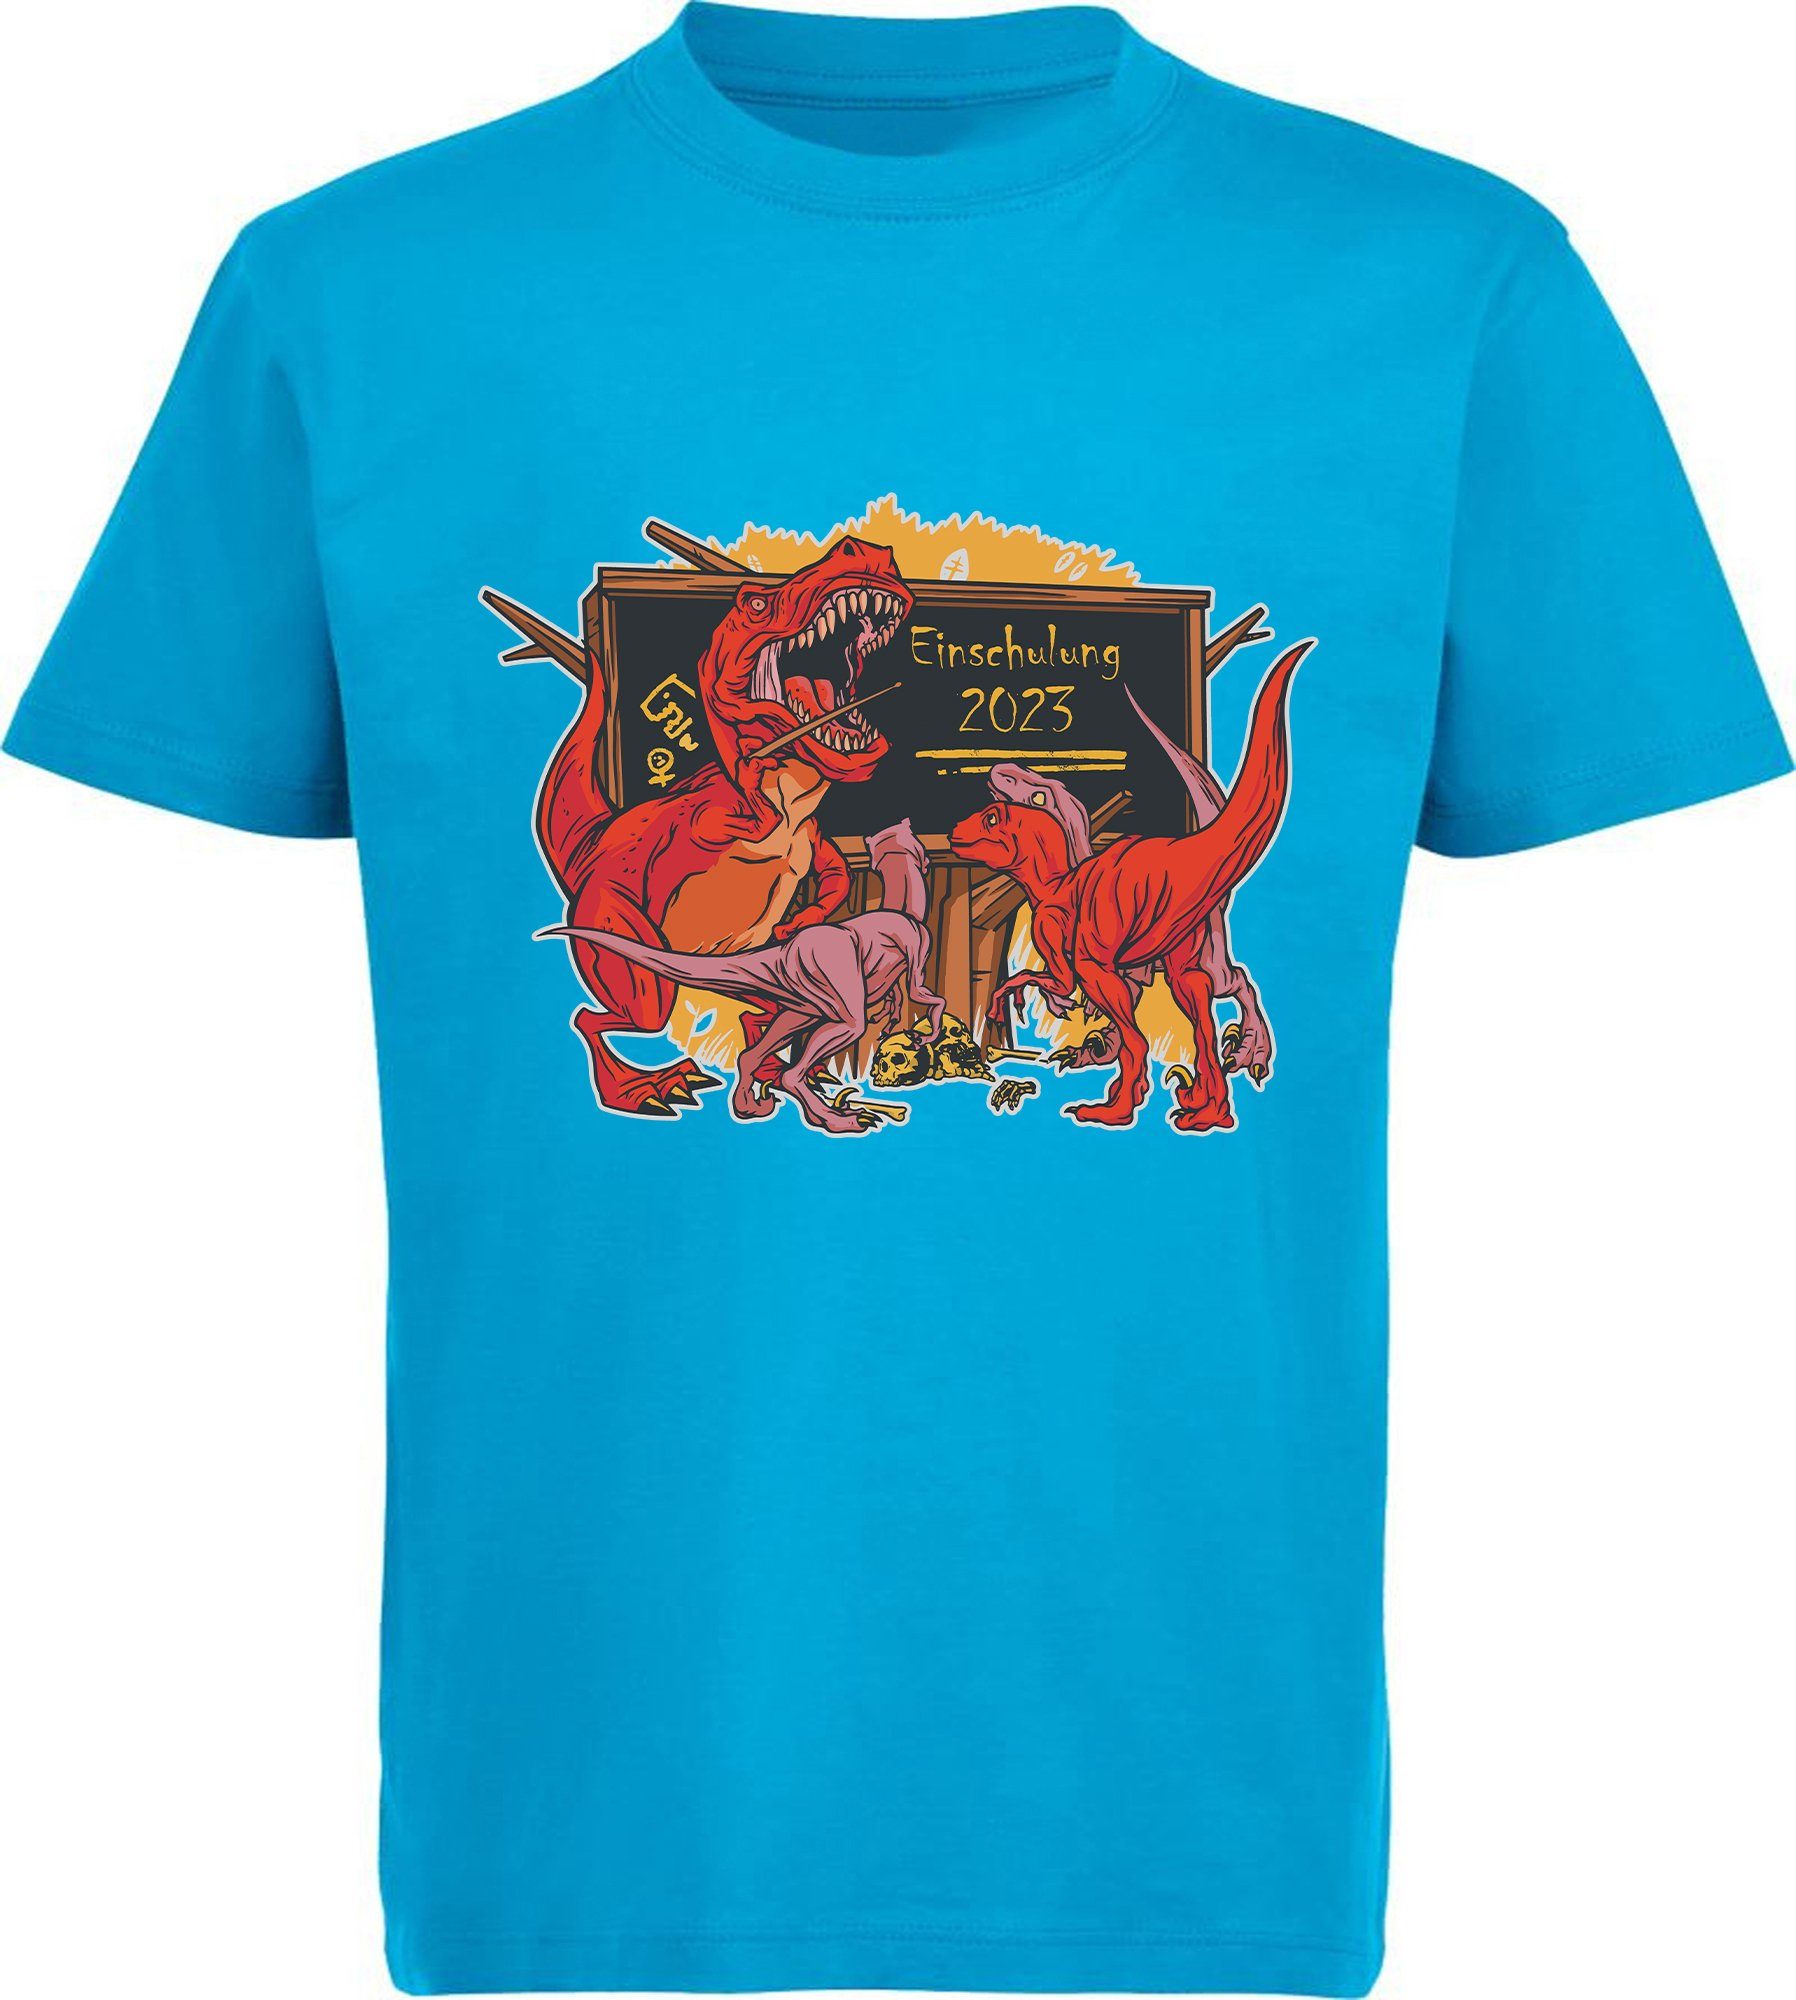 MyDesign24 Print-Shirt bedrucktes Kinder T-Shirt brüllender T-Rex als Lehrer Baumwollshirt Einschulung 2023, schwarz, weiß, rot, blau, i38 aqua blau